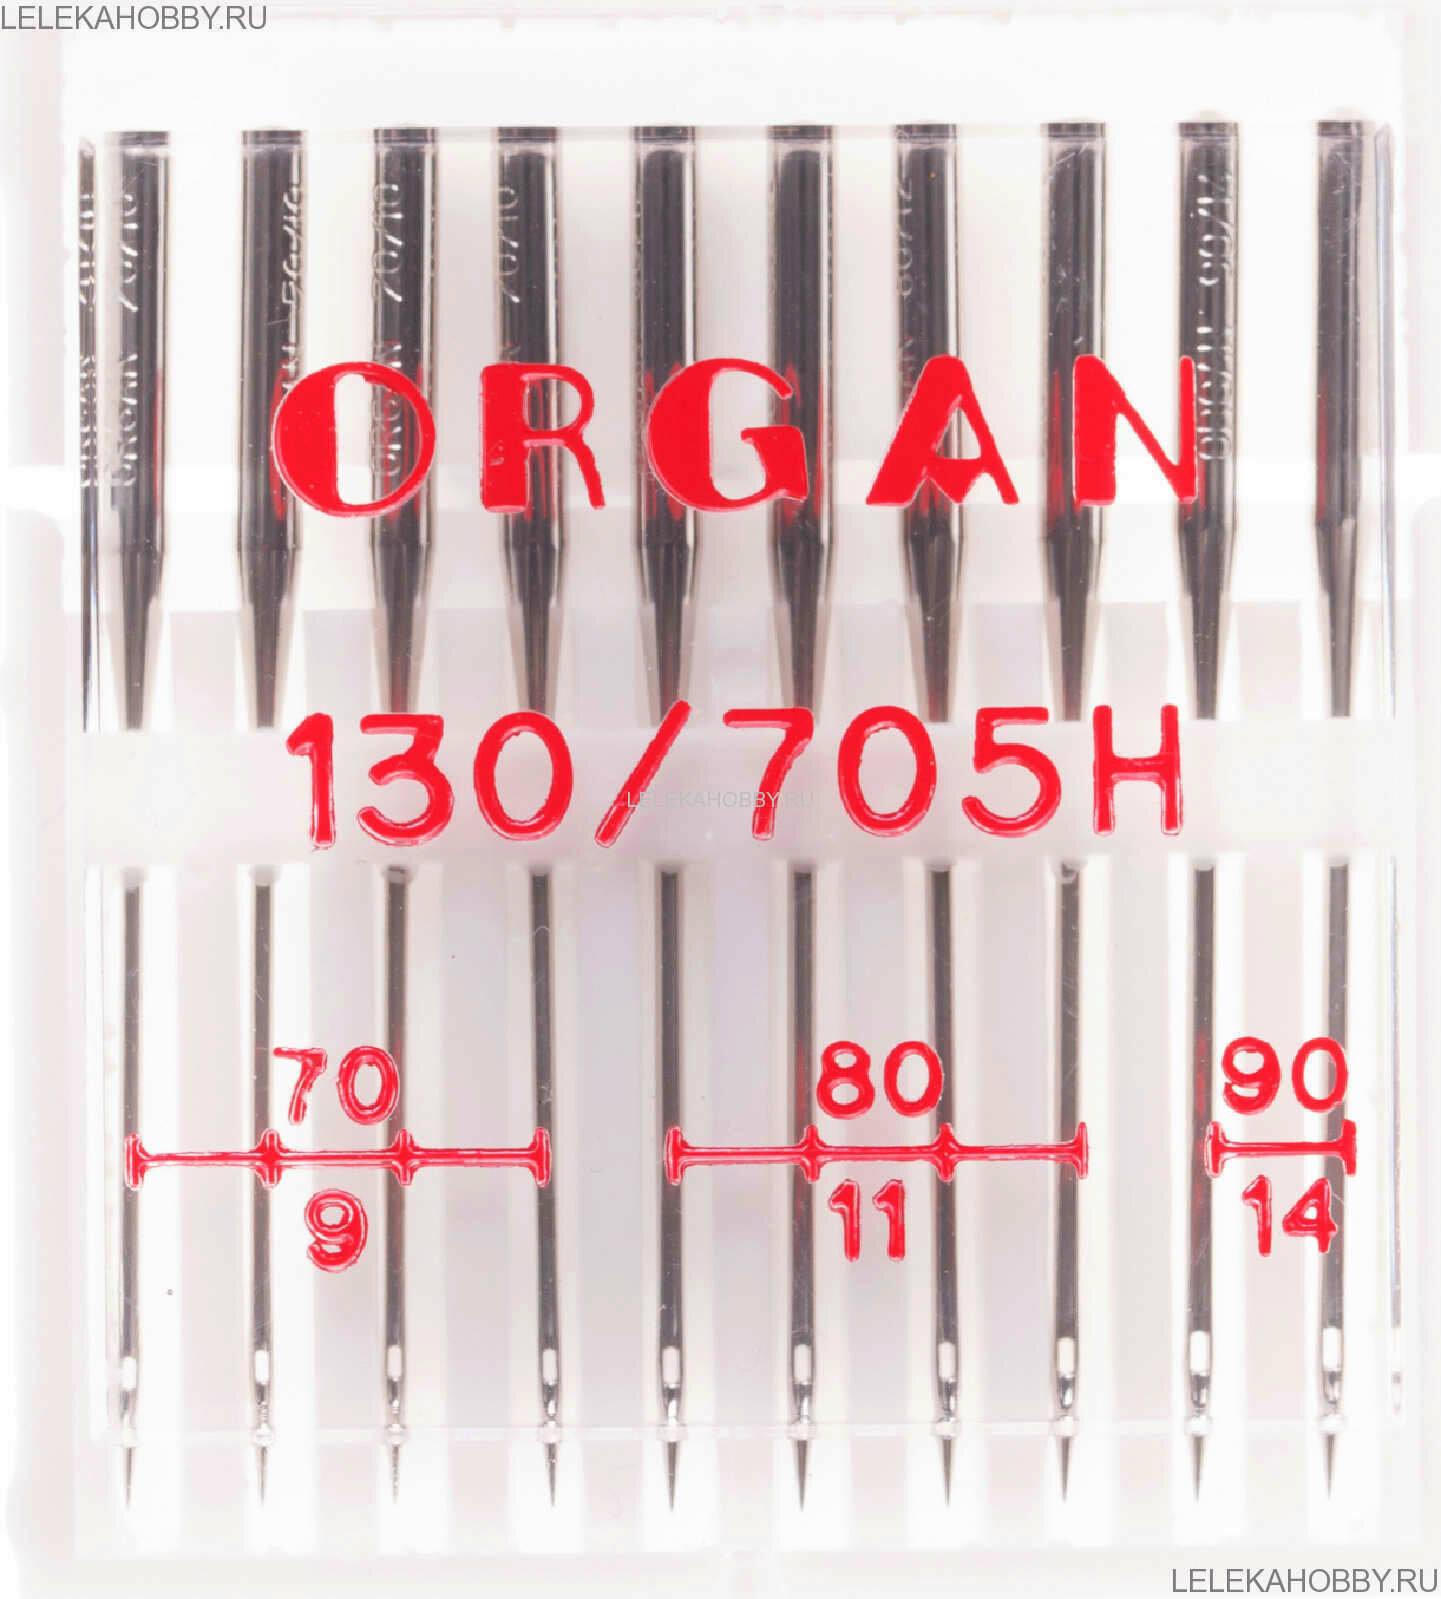 Игла/иглы Organ Universal 10/70-90, серебристый, 10 шт.